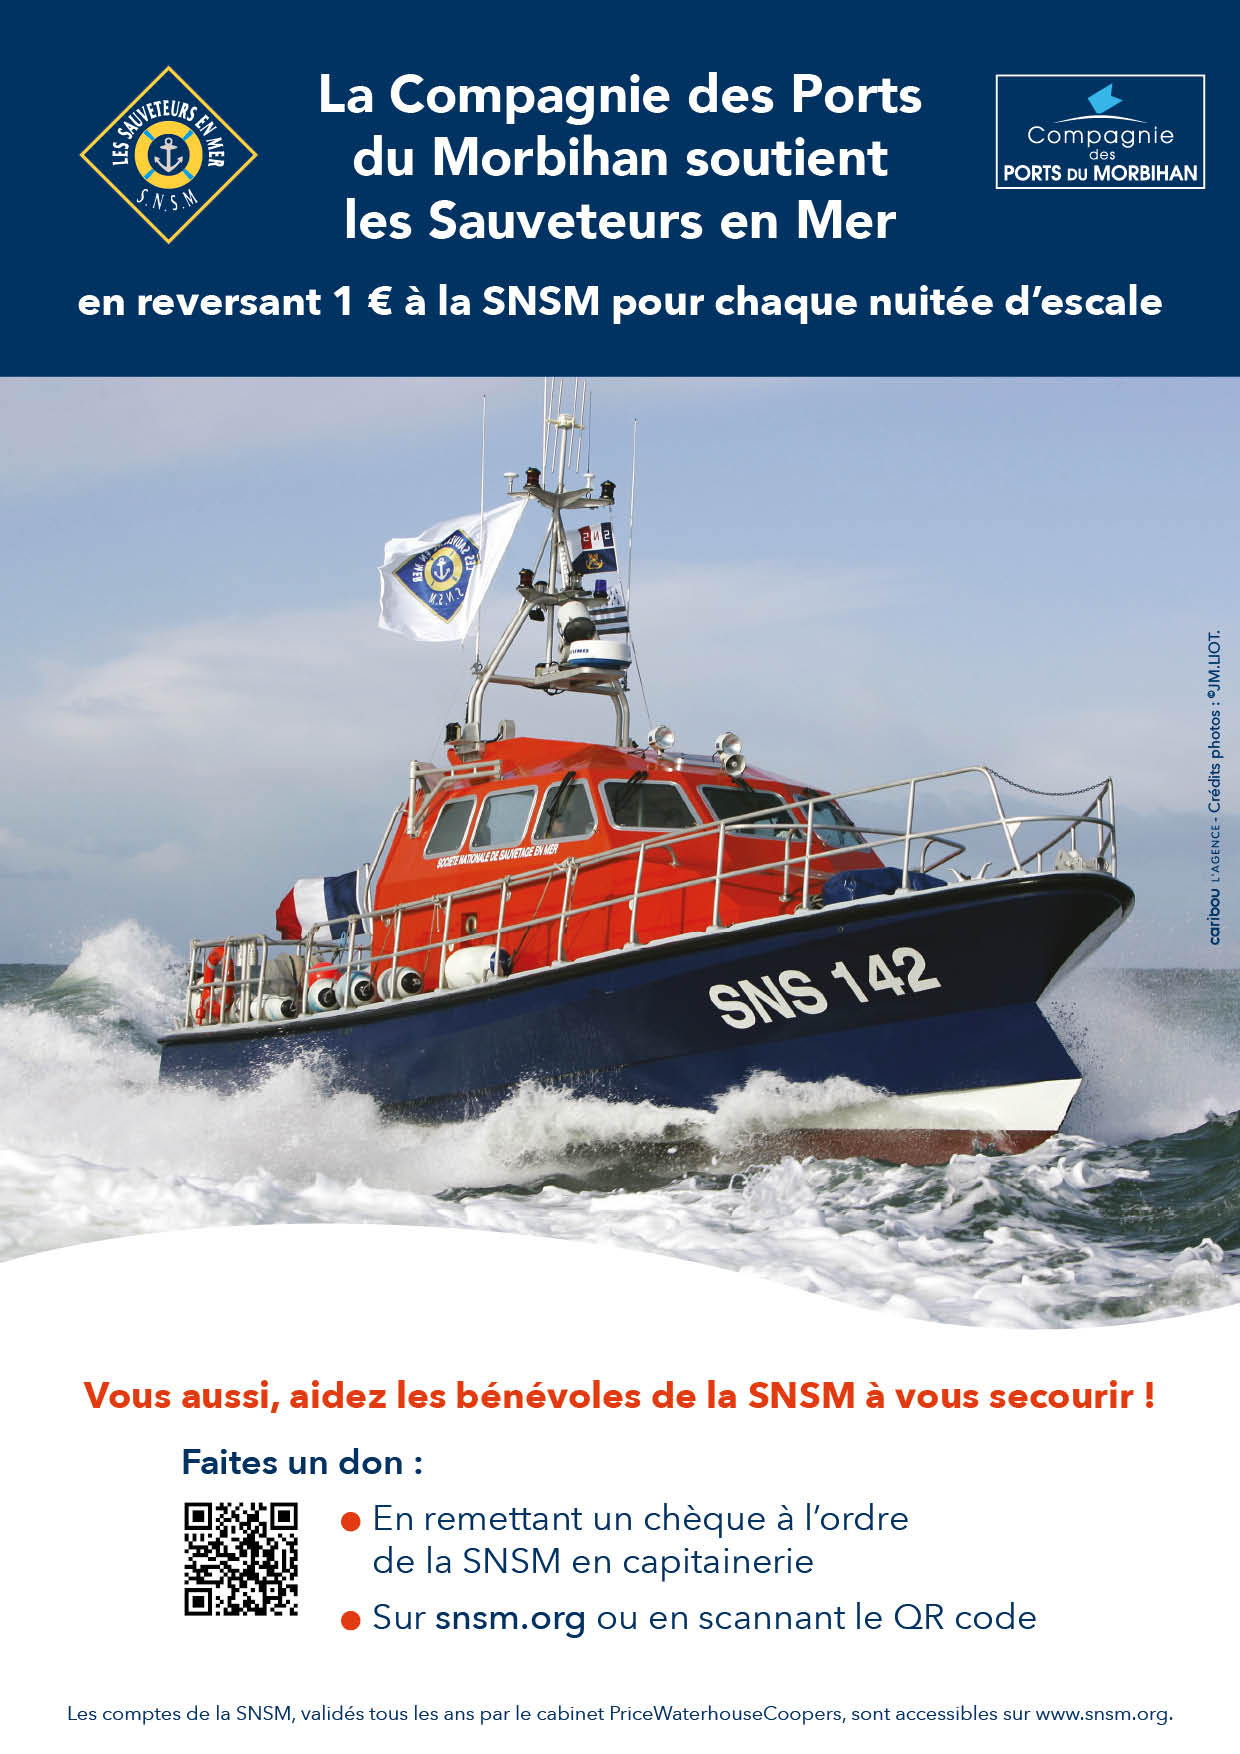 Soutien de la Compagnie des ports du Morbihan à la SNSM